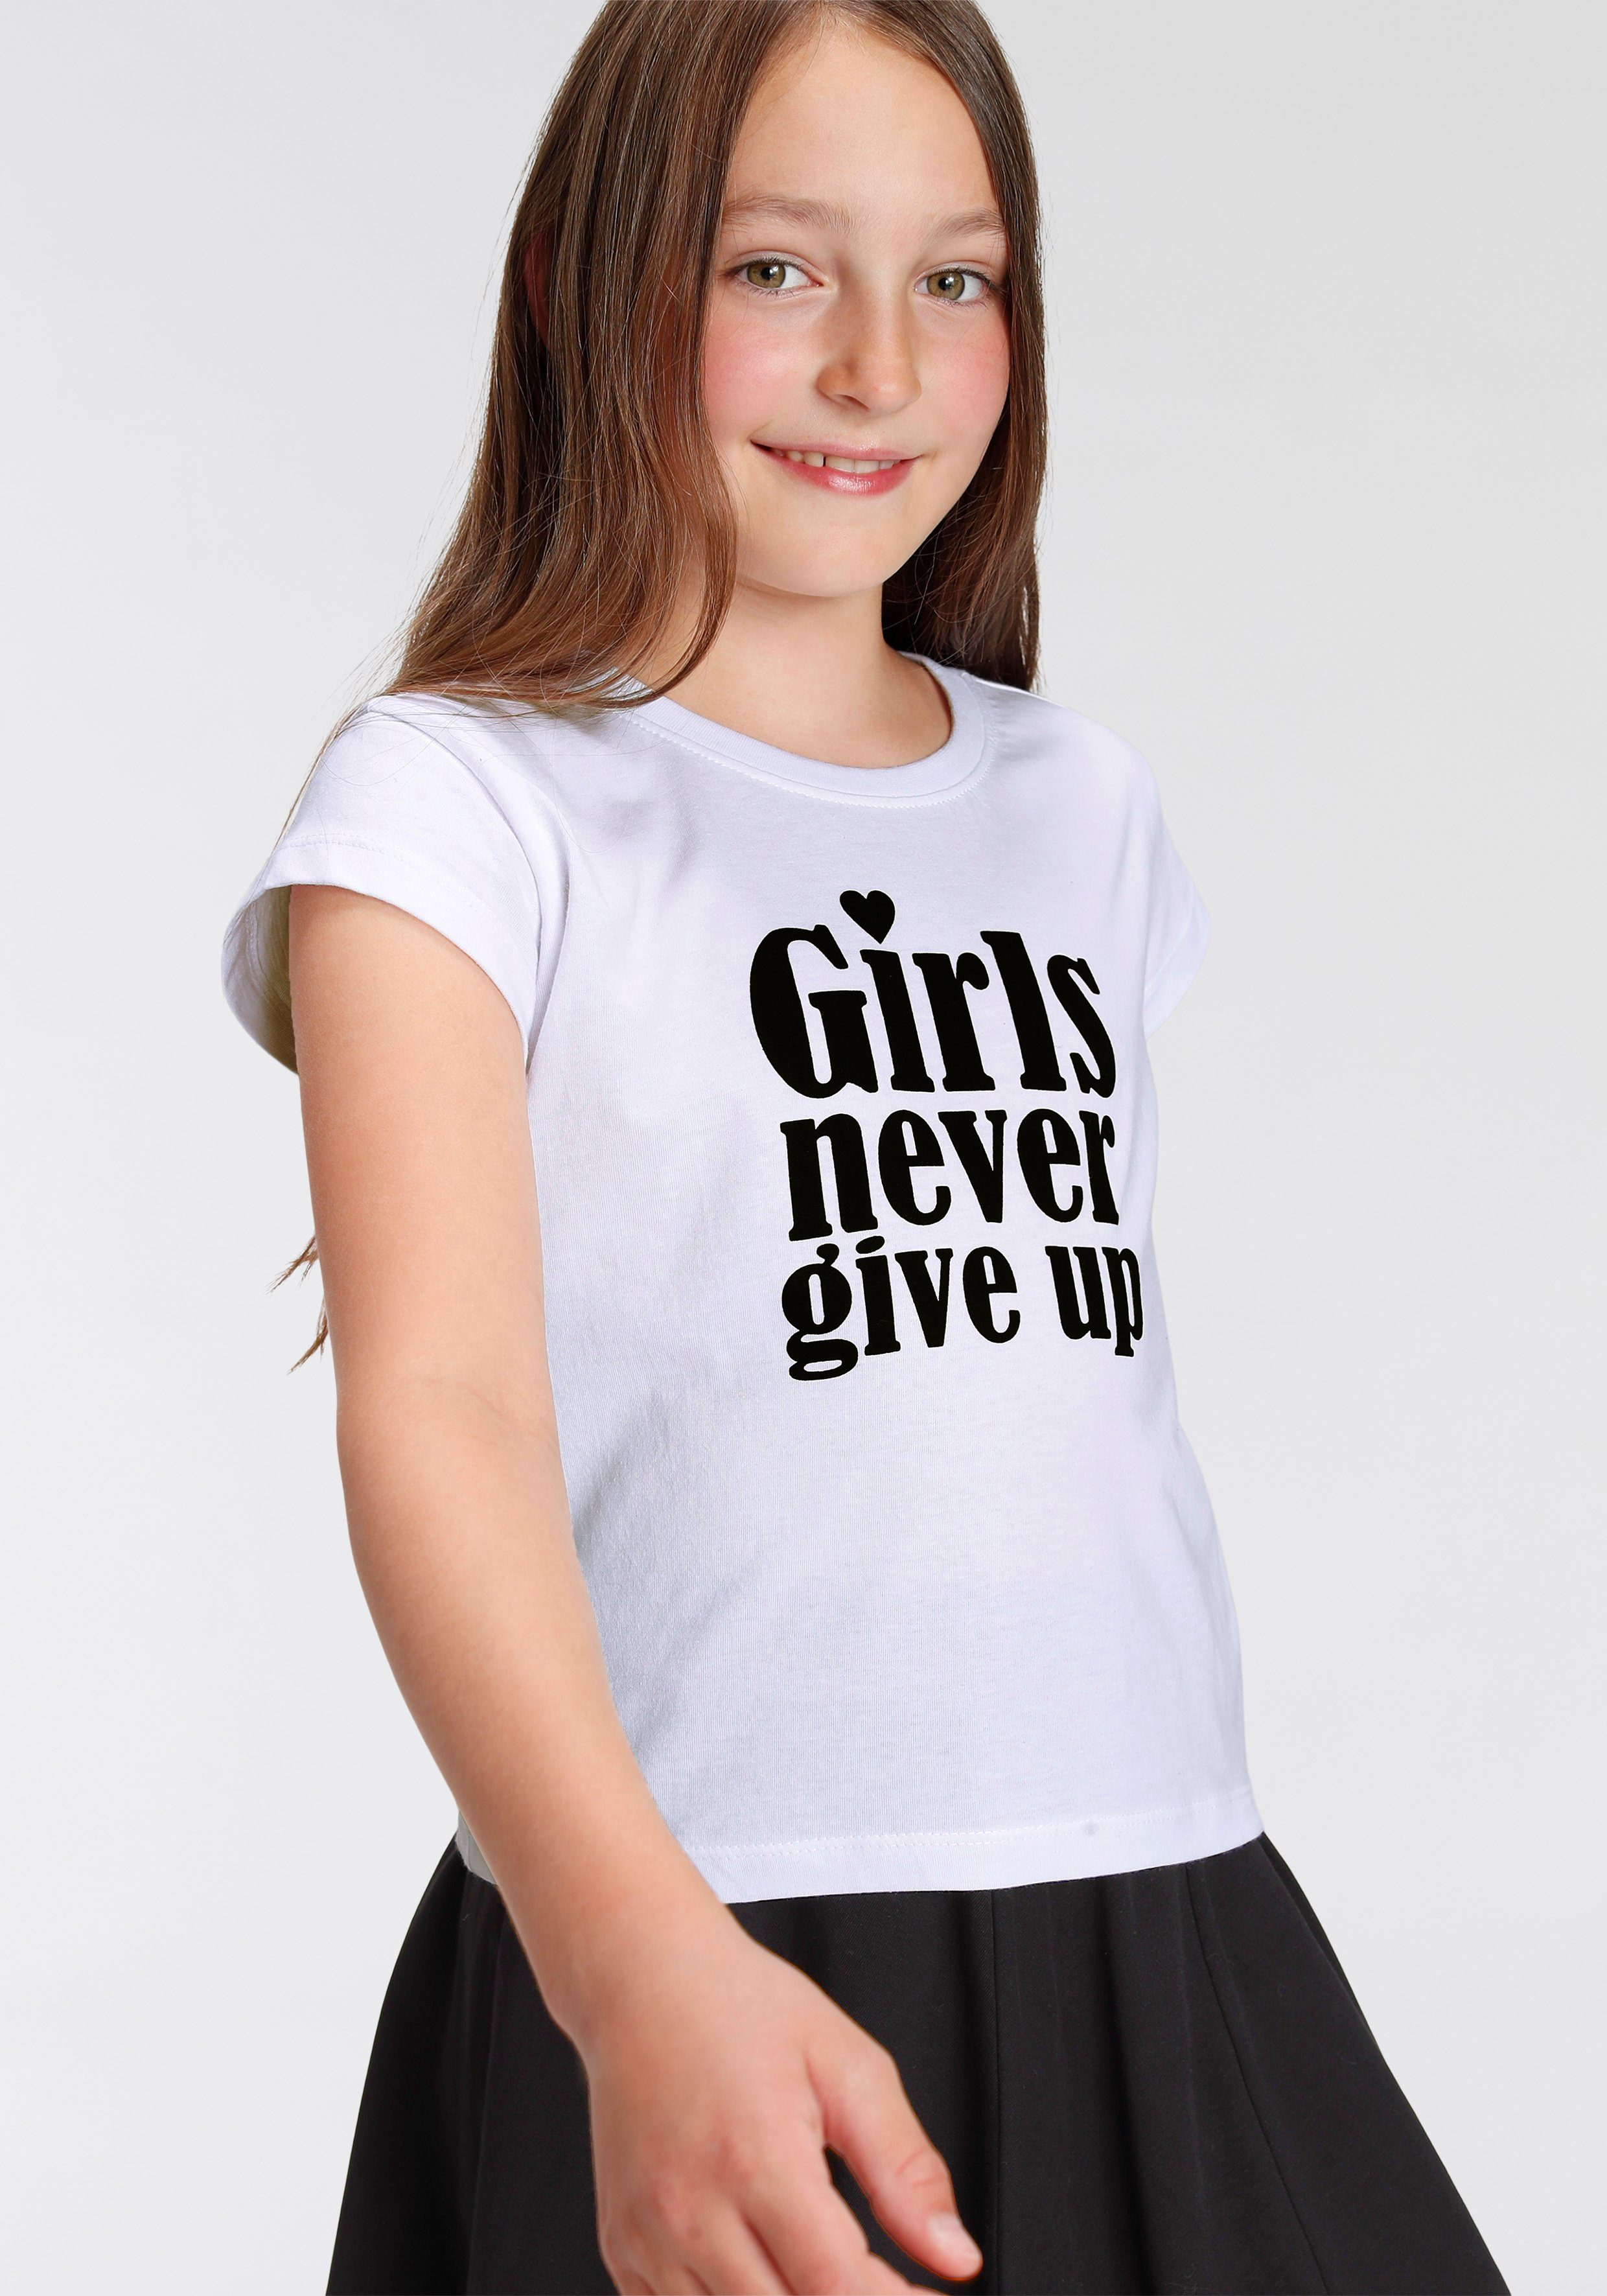 T-Shirt up KIDSWORLD kurze give Girls Form modische nerver